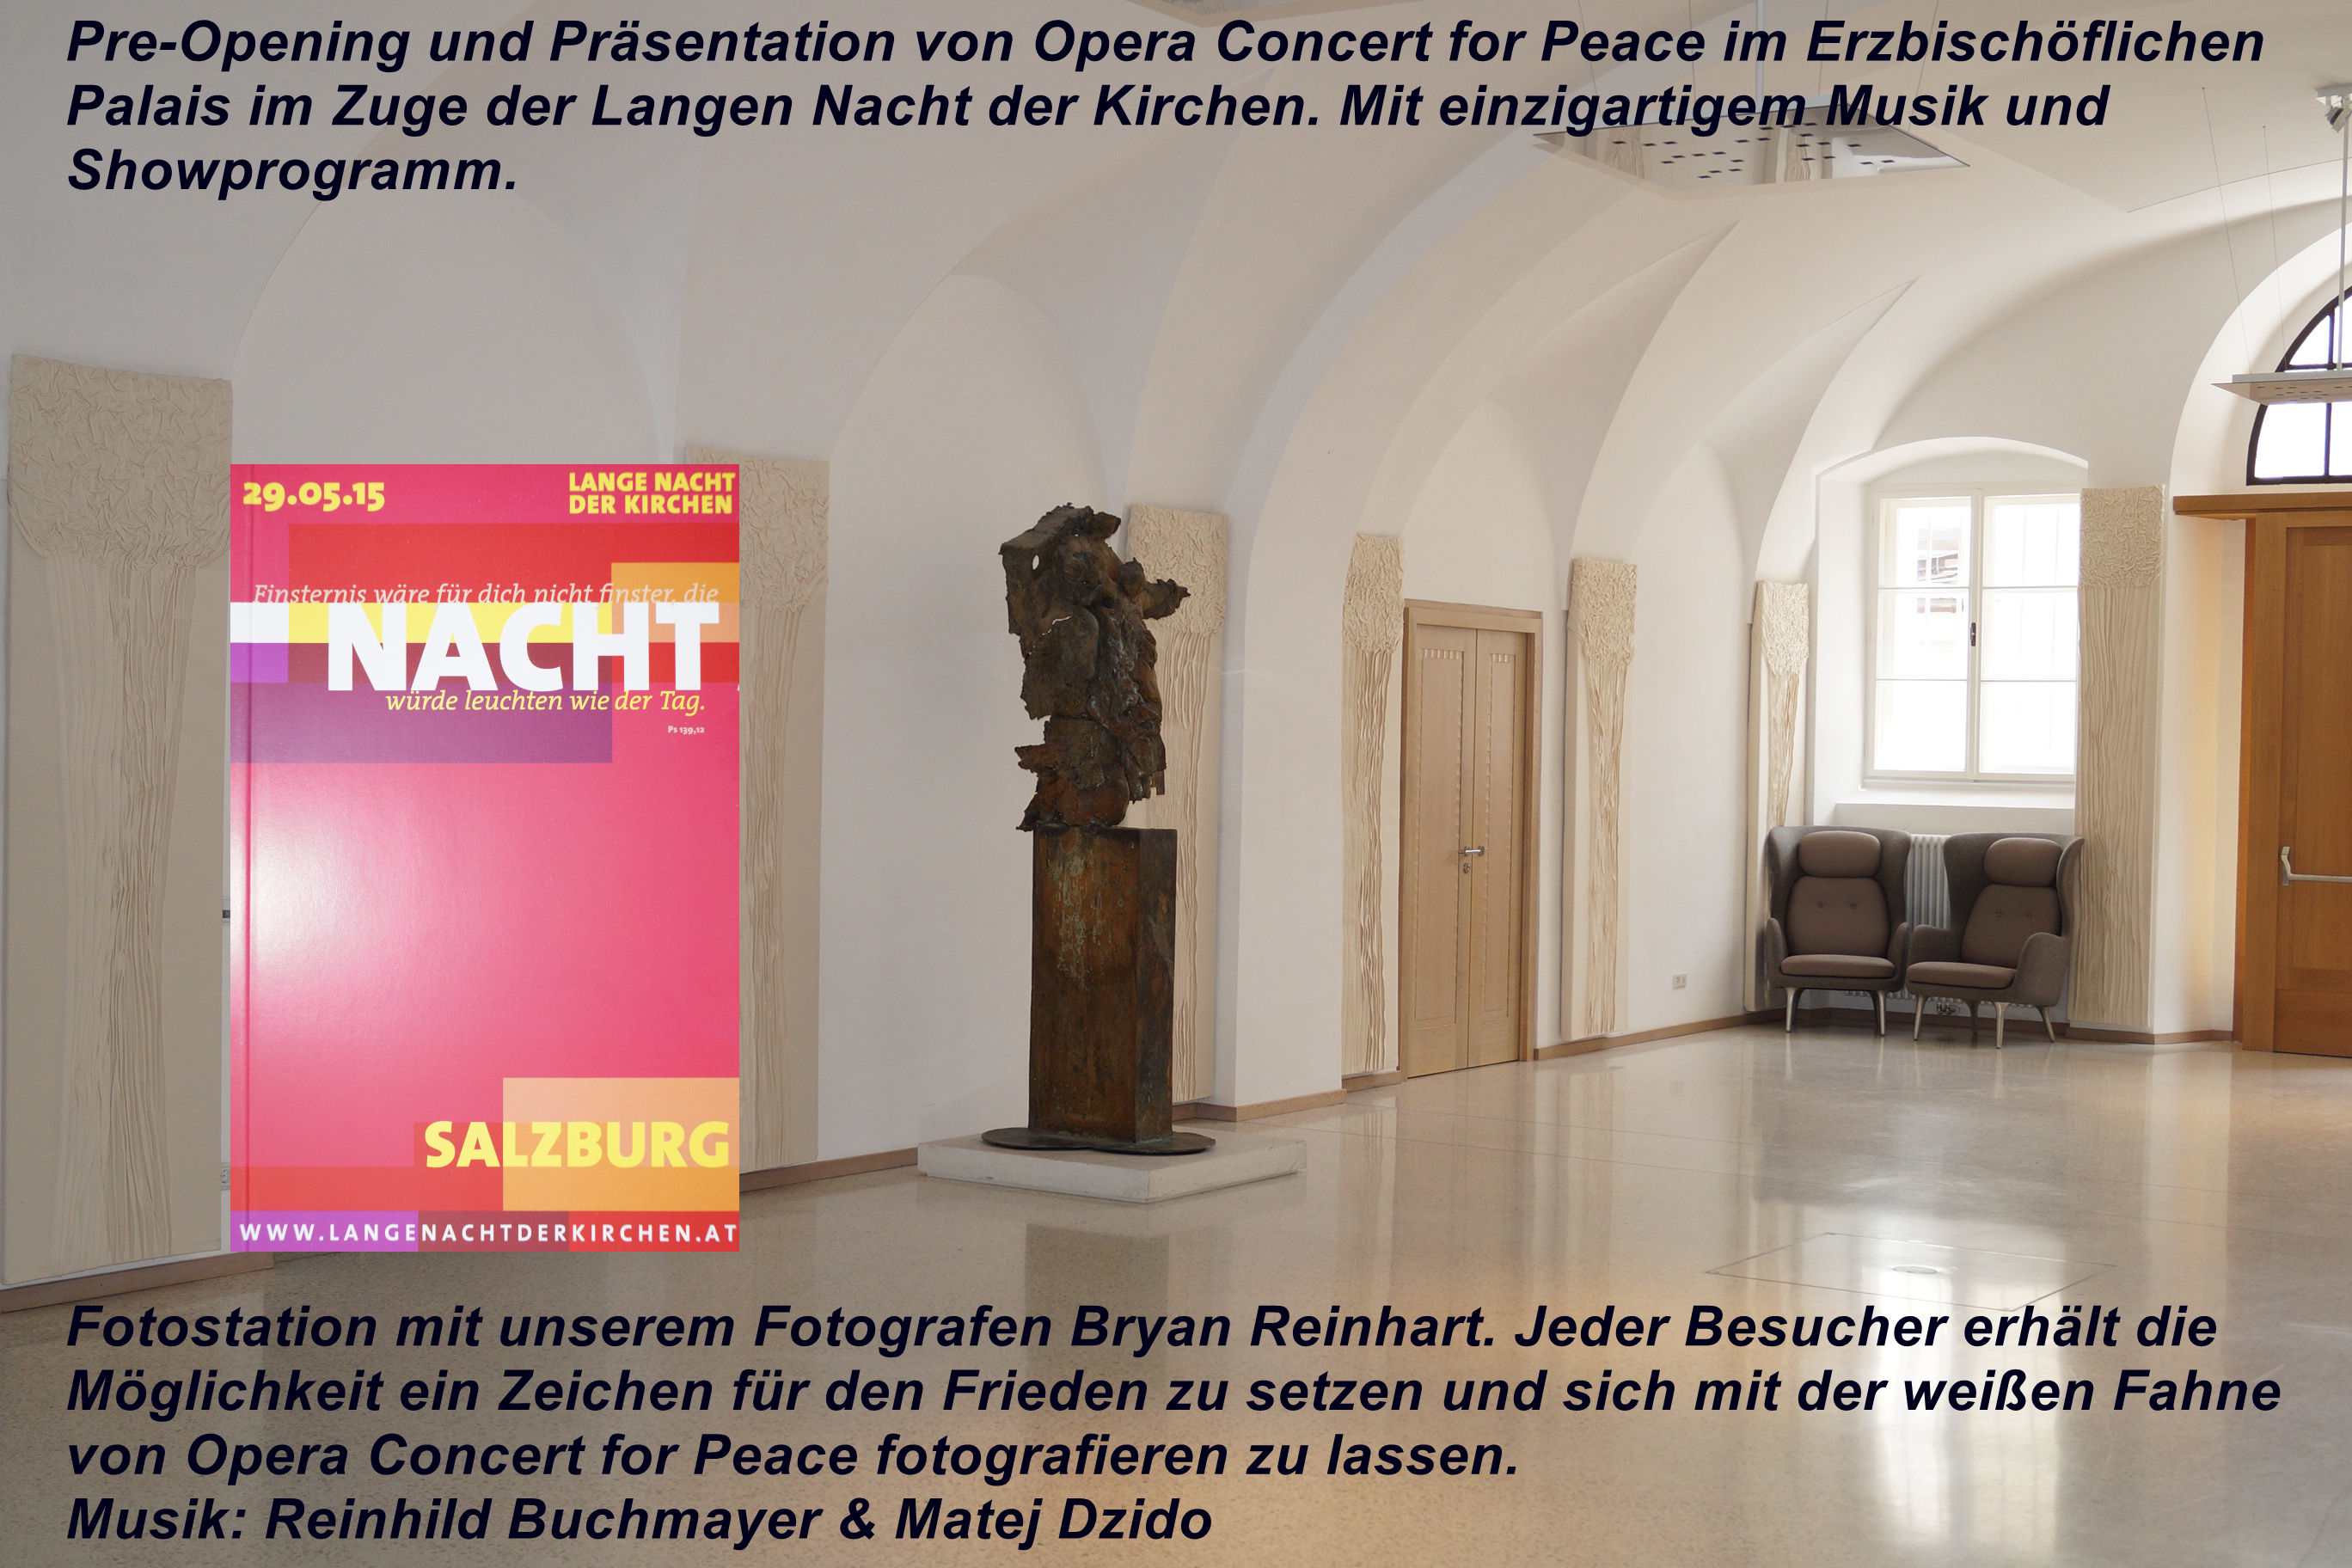 Pre-Opening und Präsentation von Opera Concert for Peace im Erzbischöflichen Palais in Salzburg am 29.05.2015